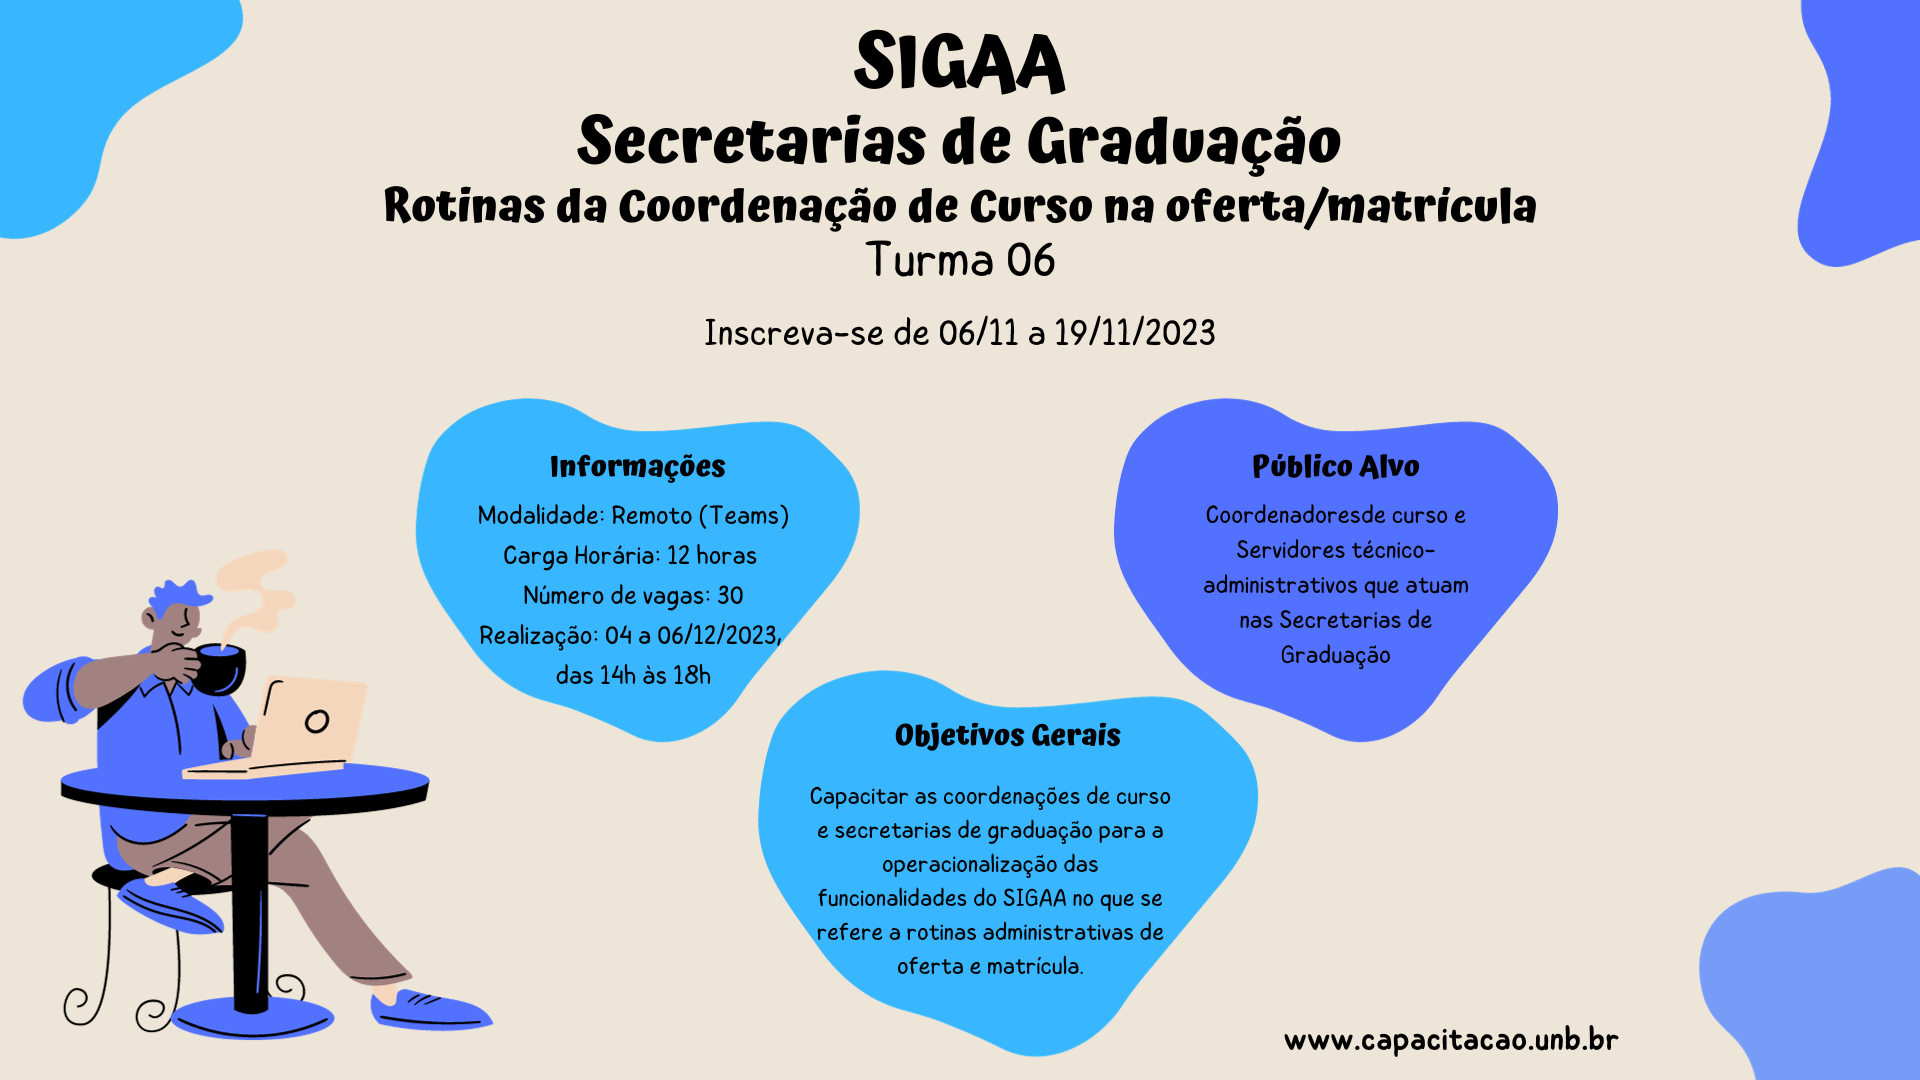 sigaa_secretarias_de_graduacao_-_turma_04_-_facebook.png